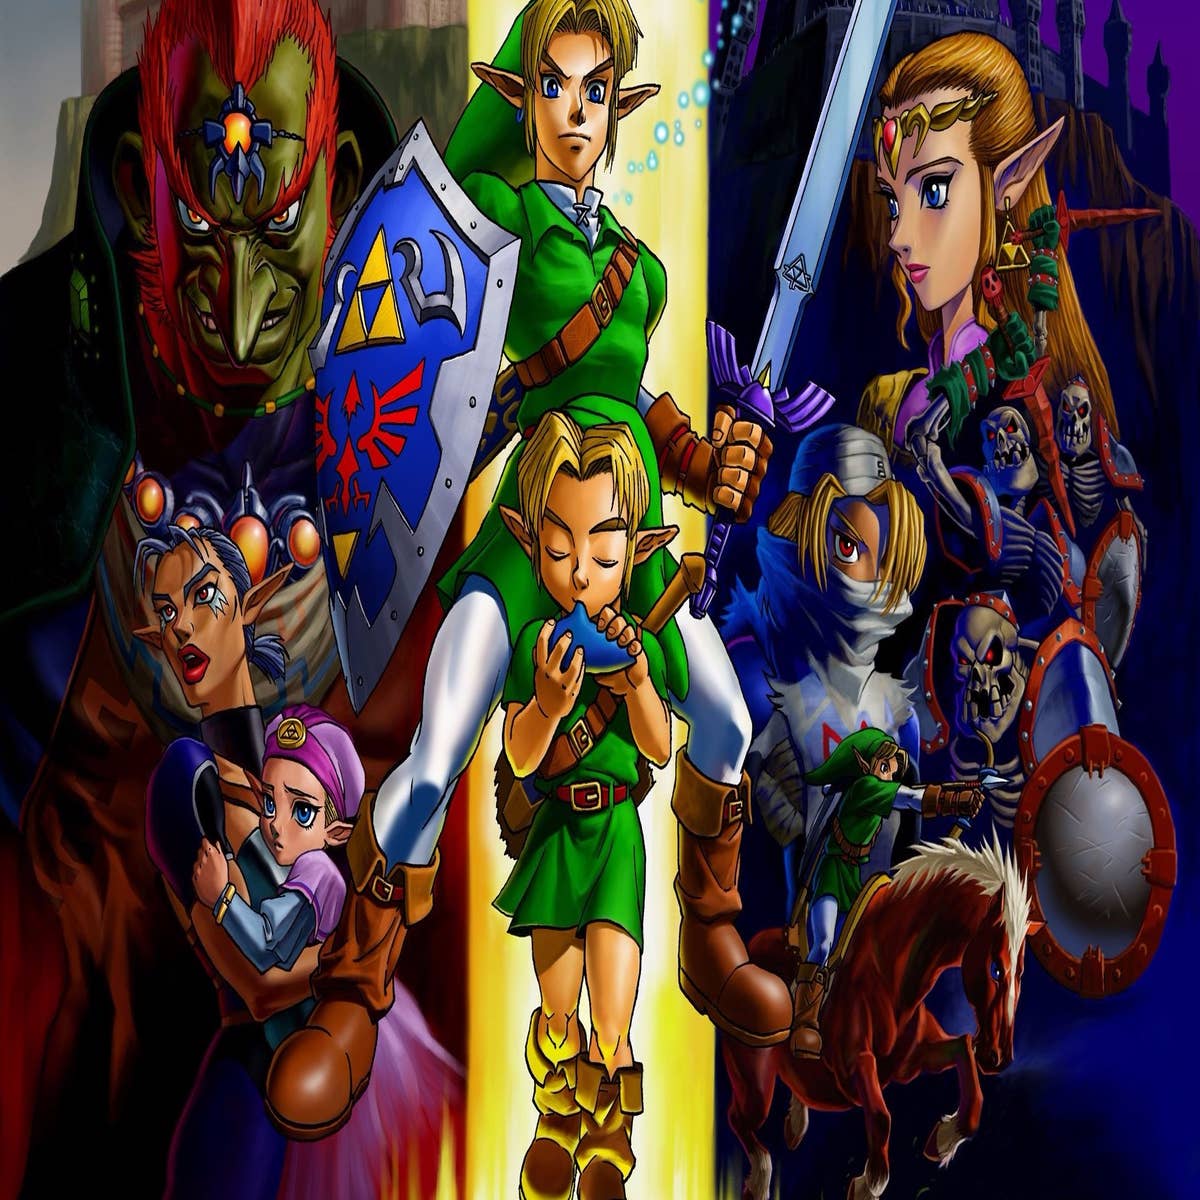 The Legend of Zelda Video Games in The Legend of Zelda 